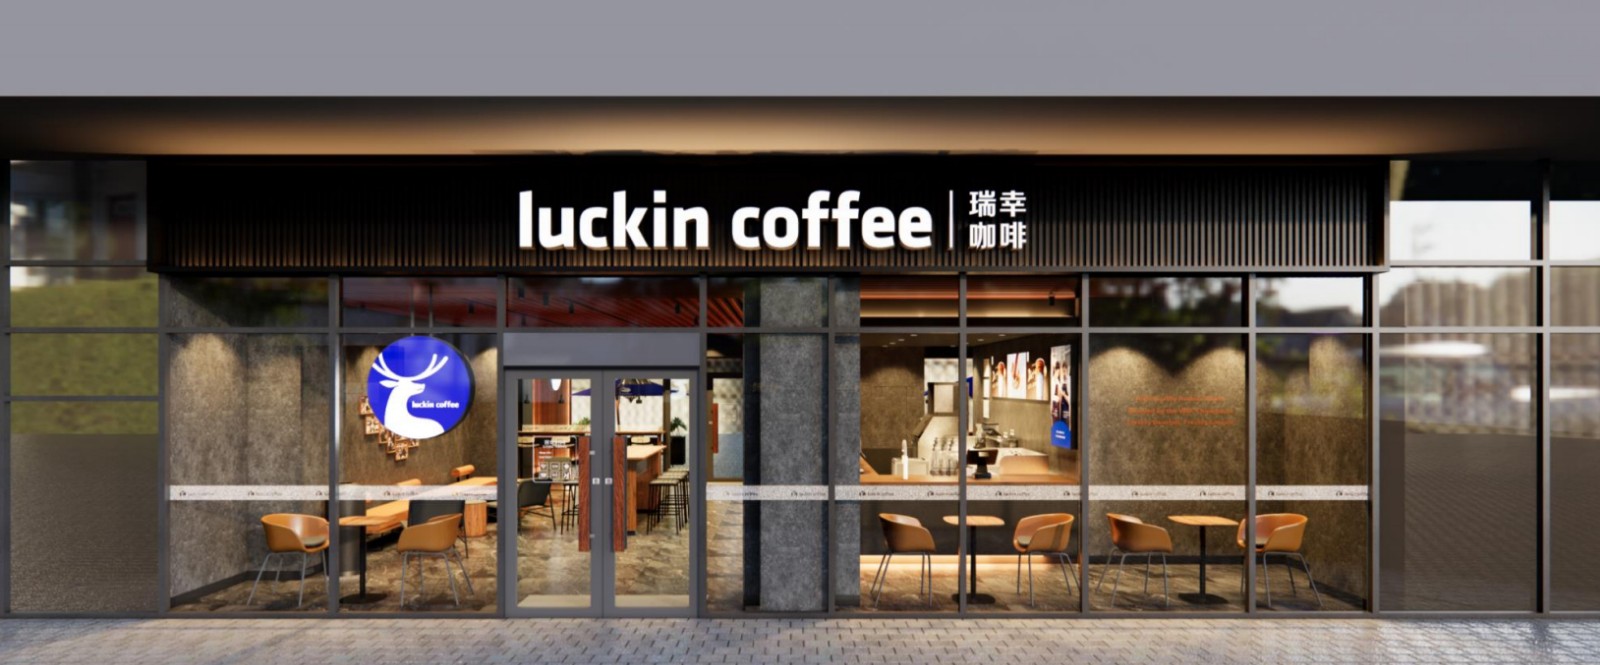 知名咖啡连锁品牌“瑞幸咖啡”强势入驻威尼斯欢乐娱人城中心